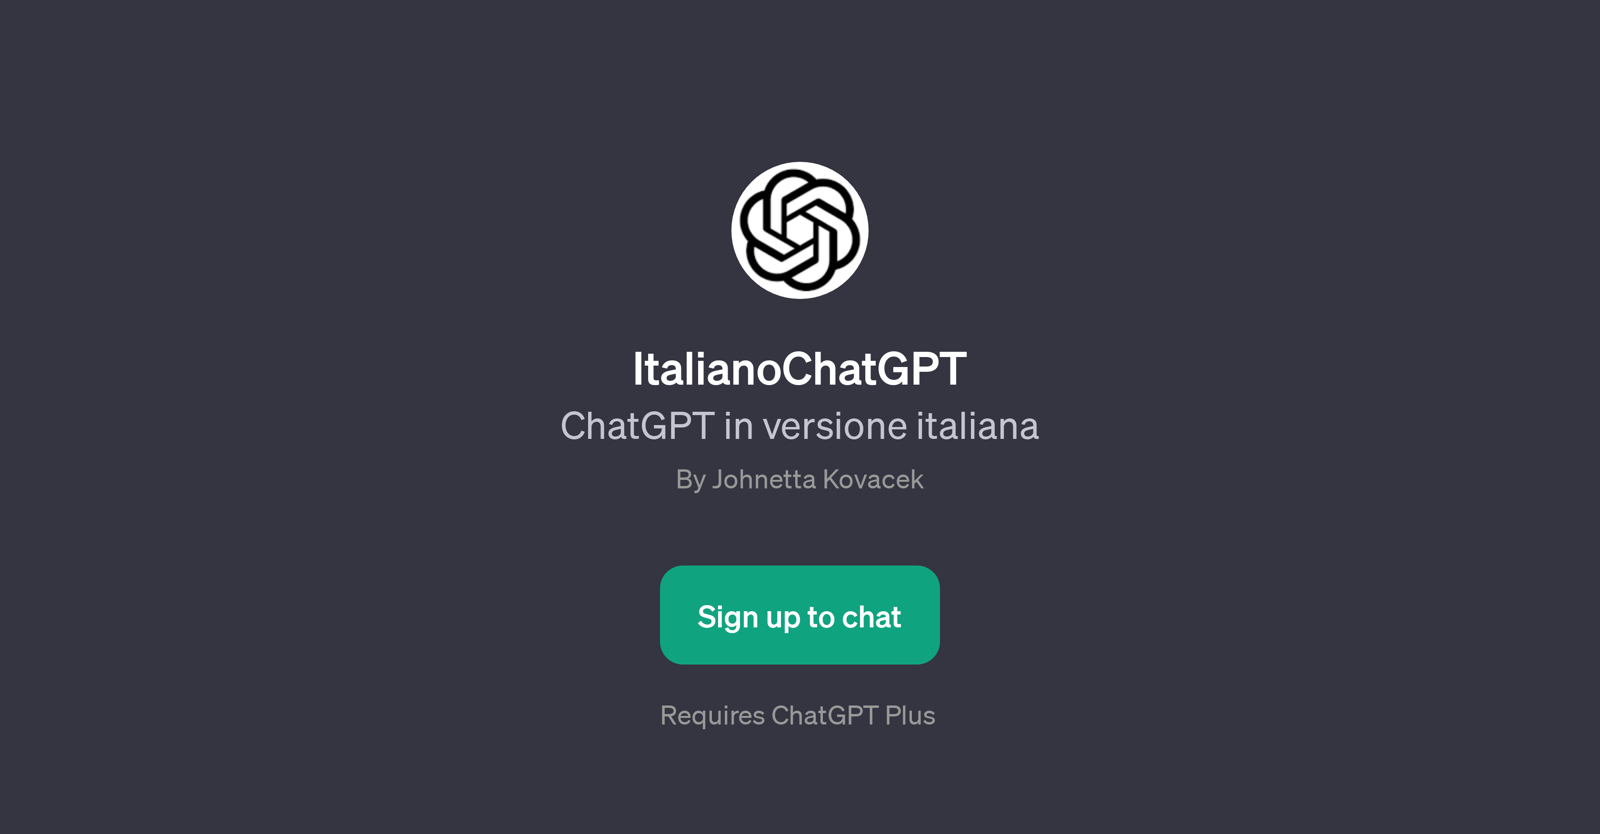 ItalianoChatGPT website